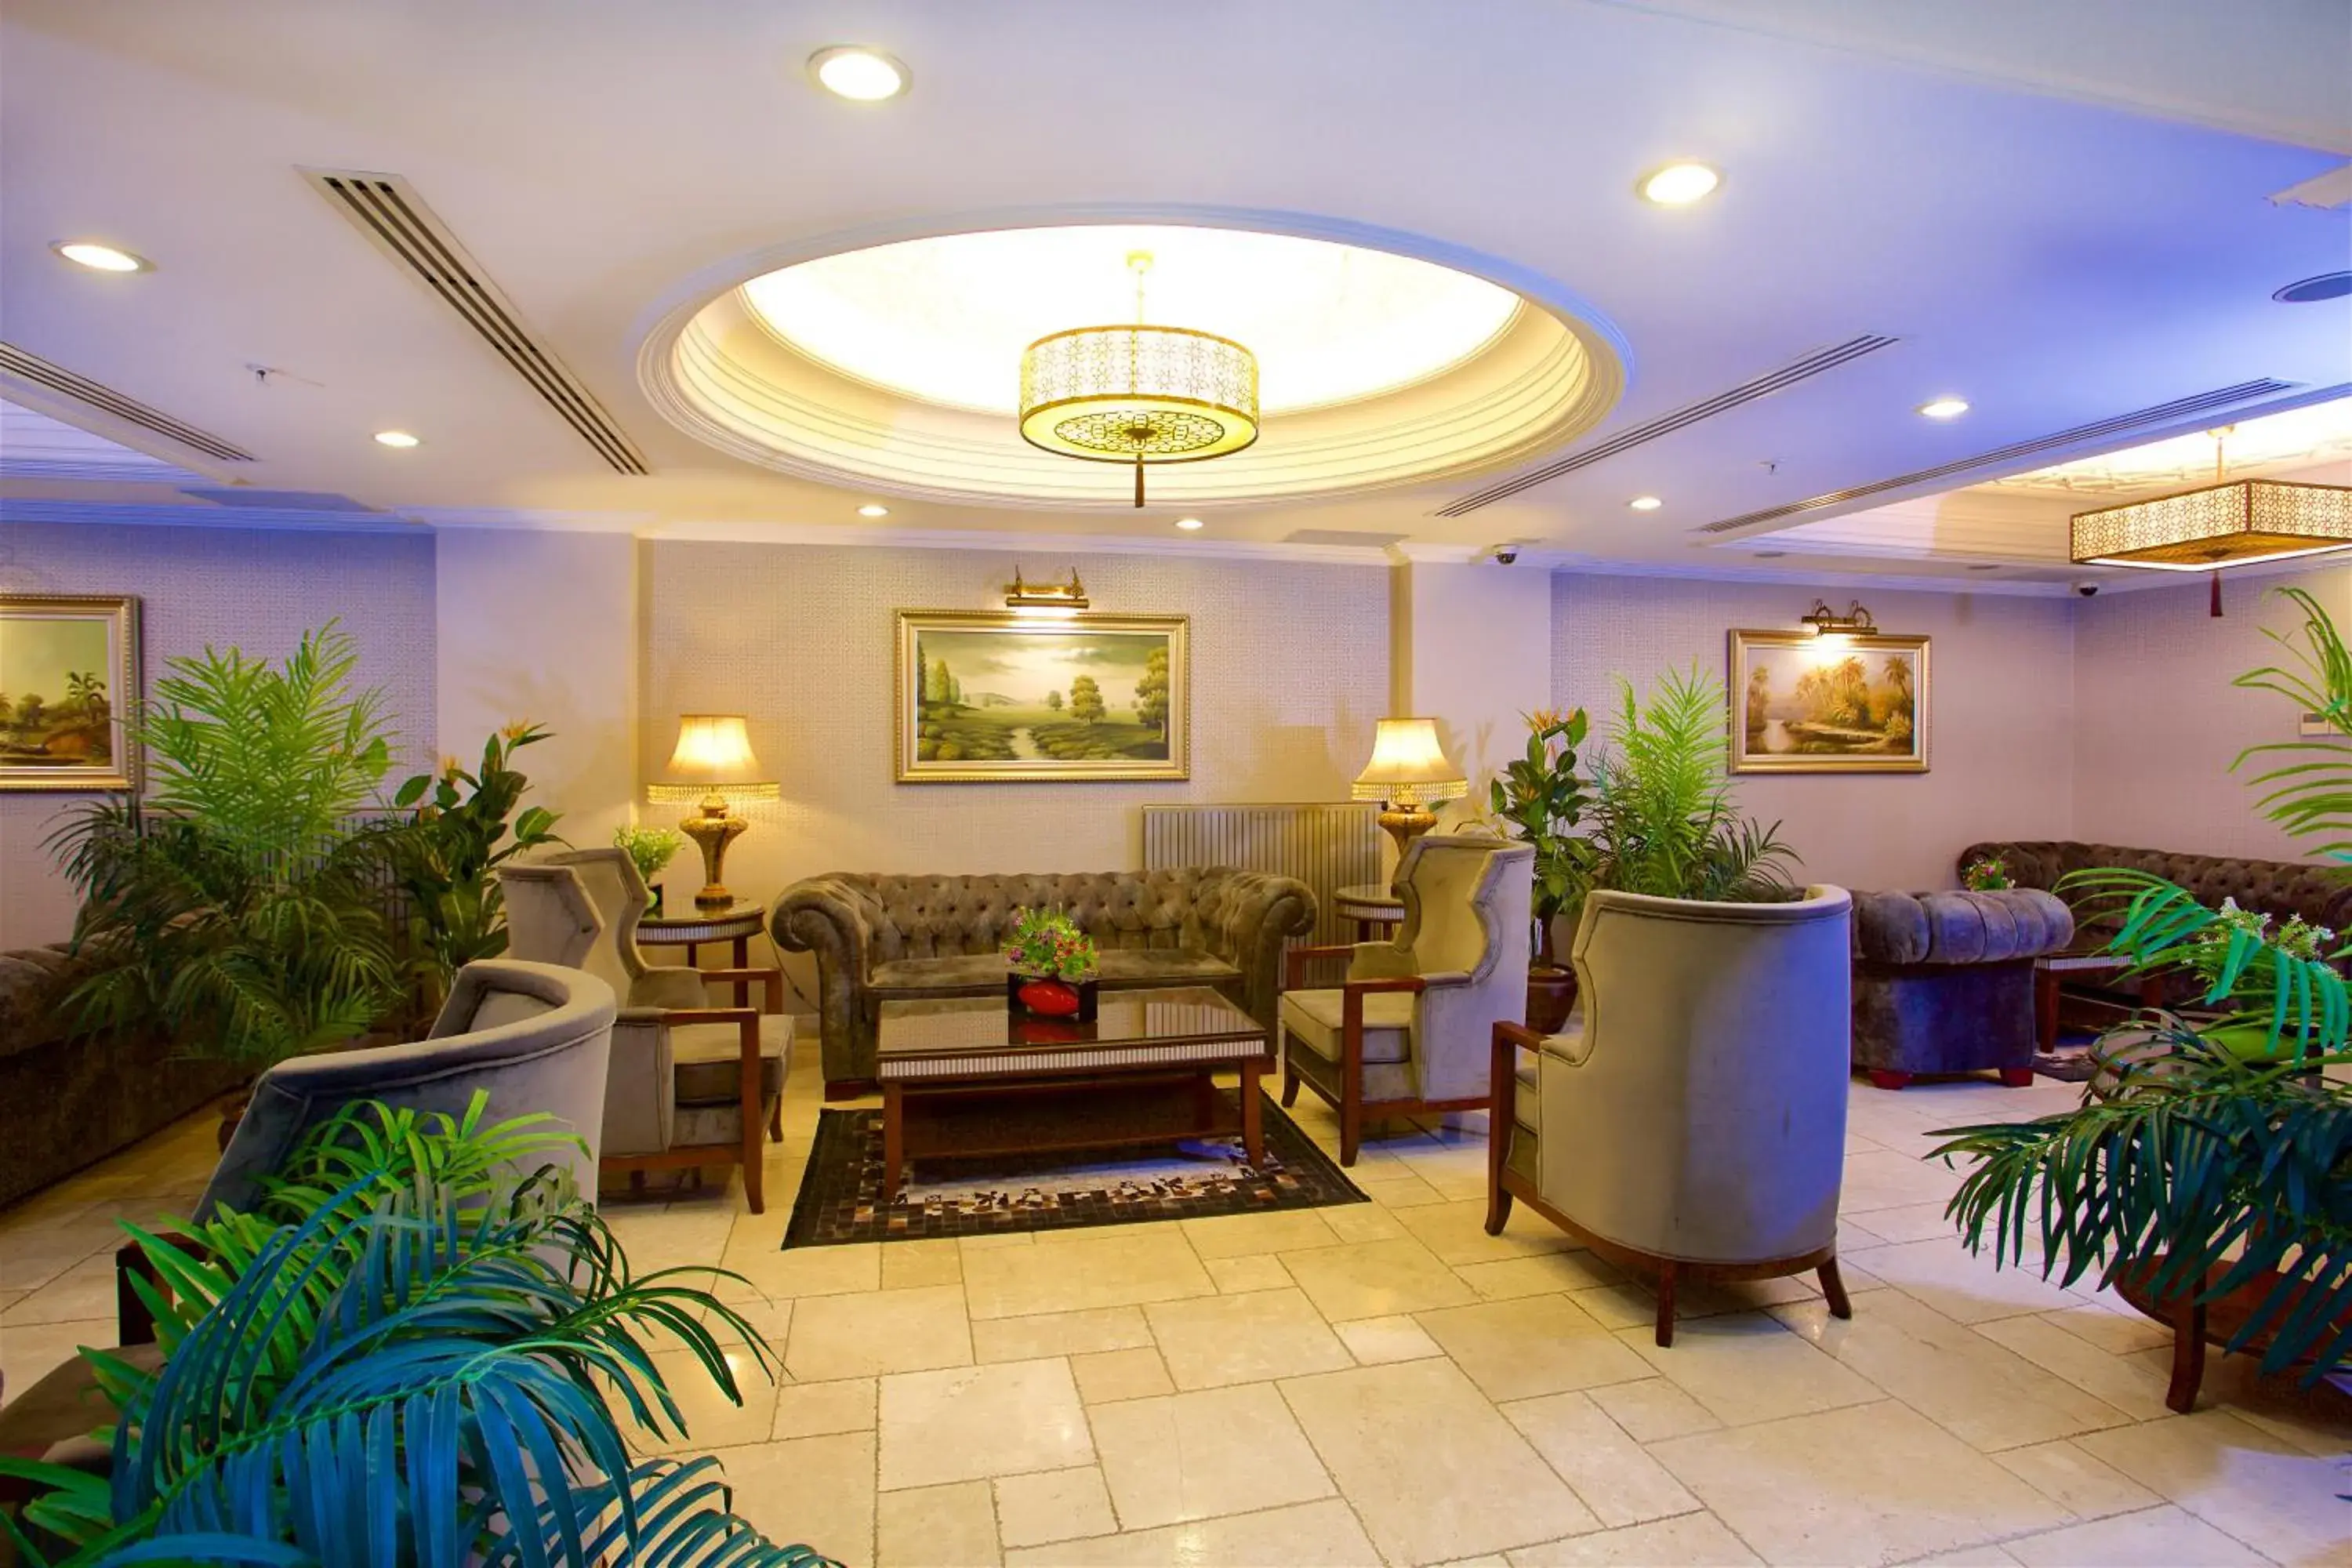 Seating area, Lobby/Reception in Emporium Hotel